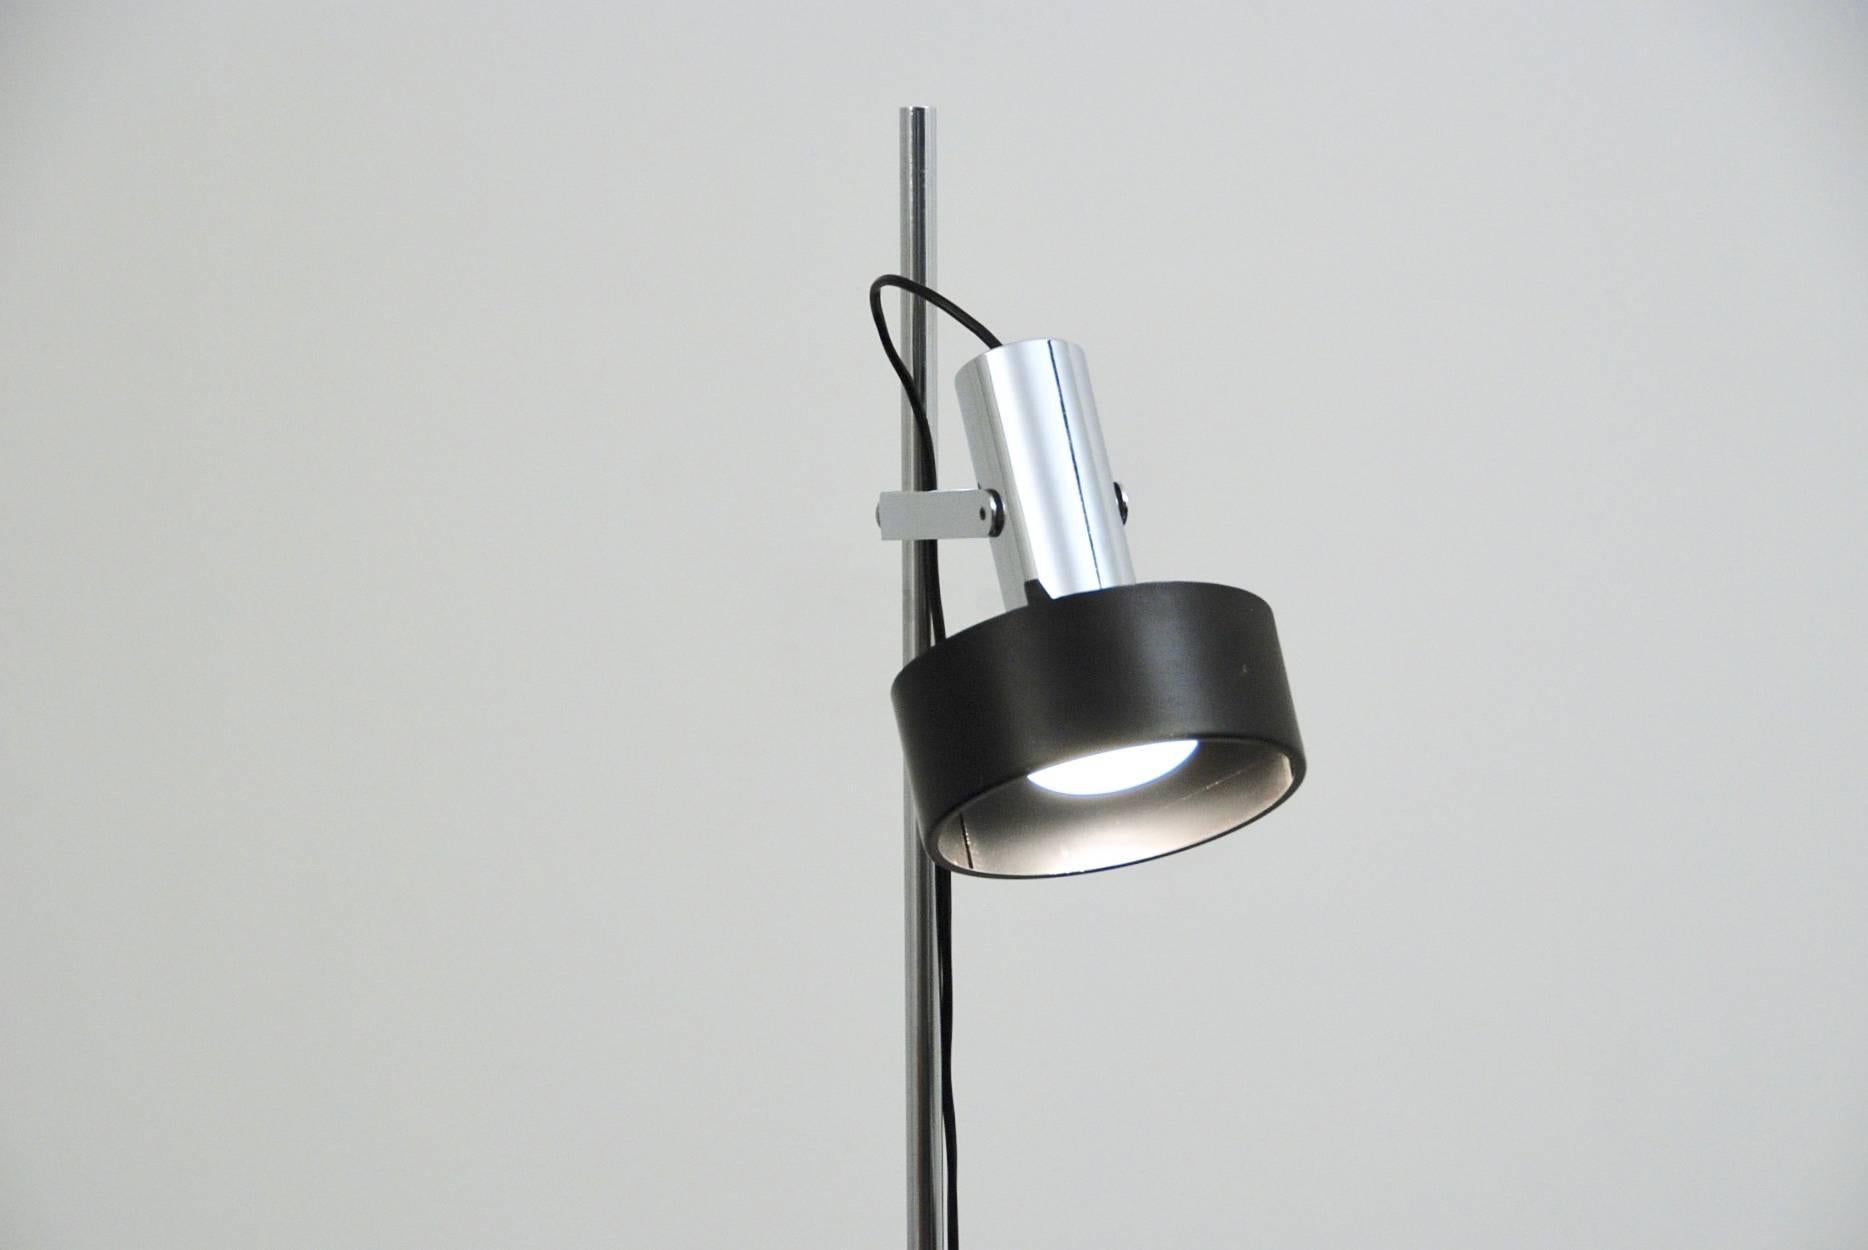 Italian Stilnovo Floor Lamp For Sale